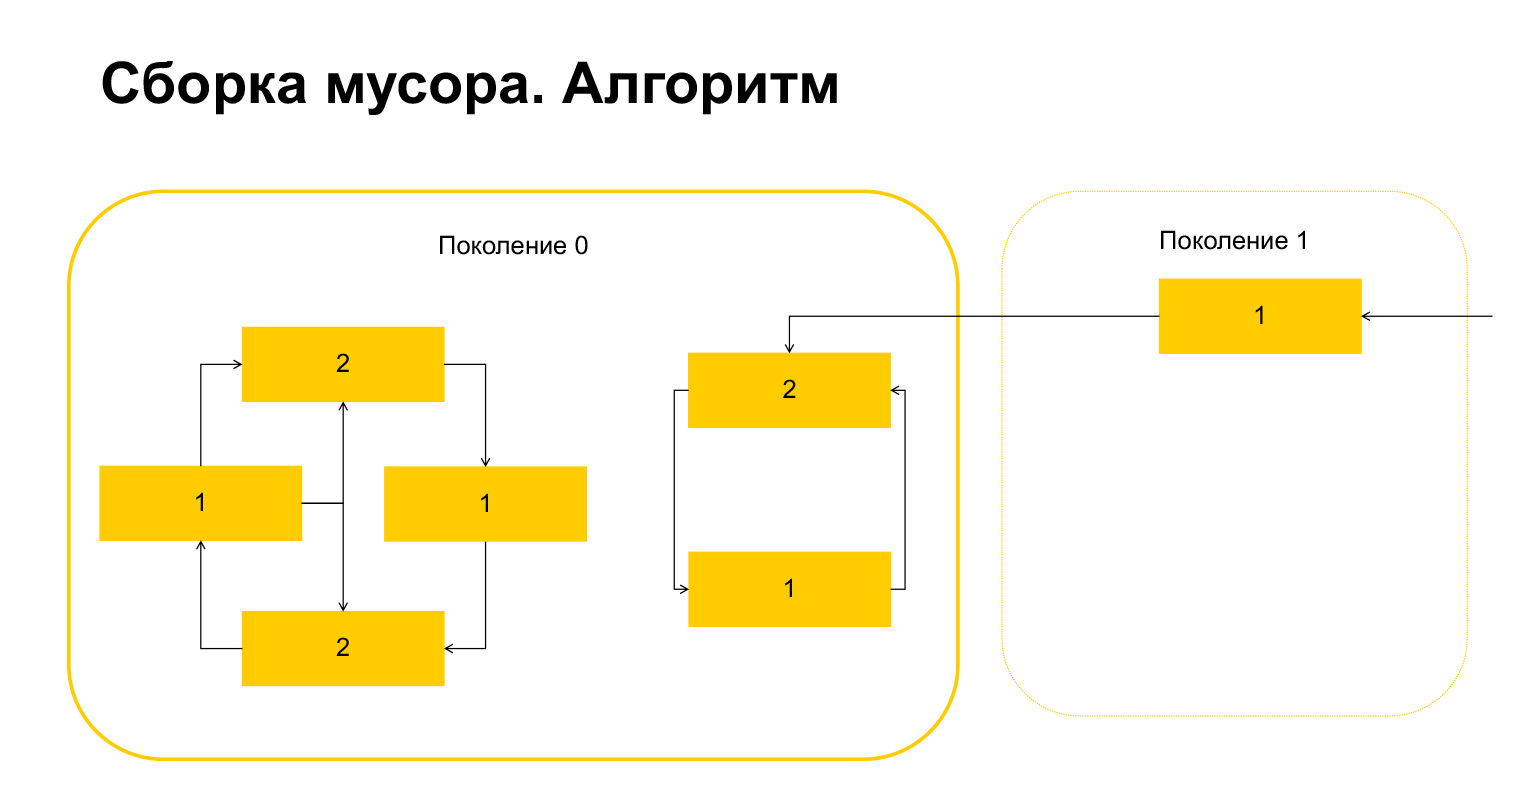 Устройство CPython. Доклад Яндекса - 47